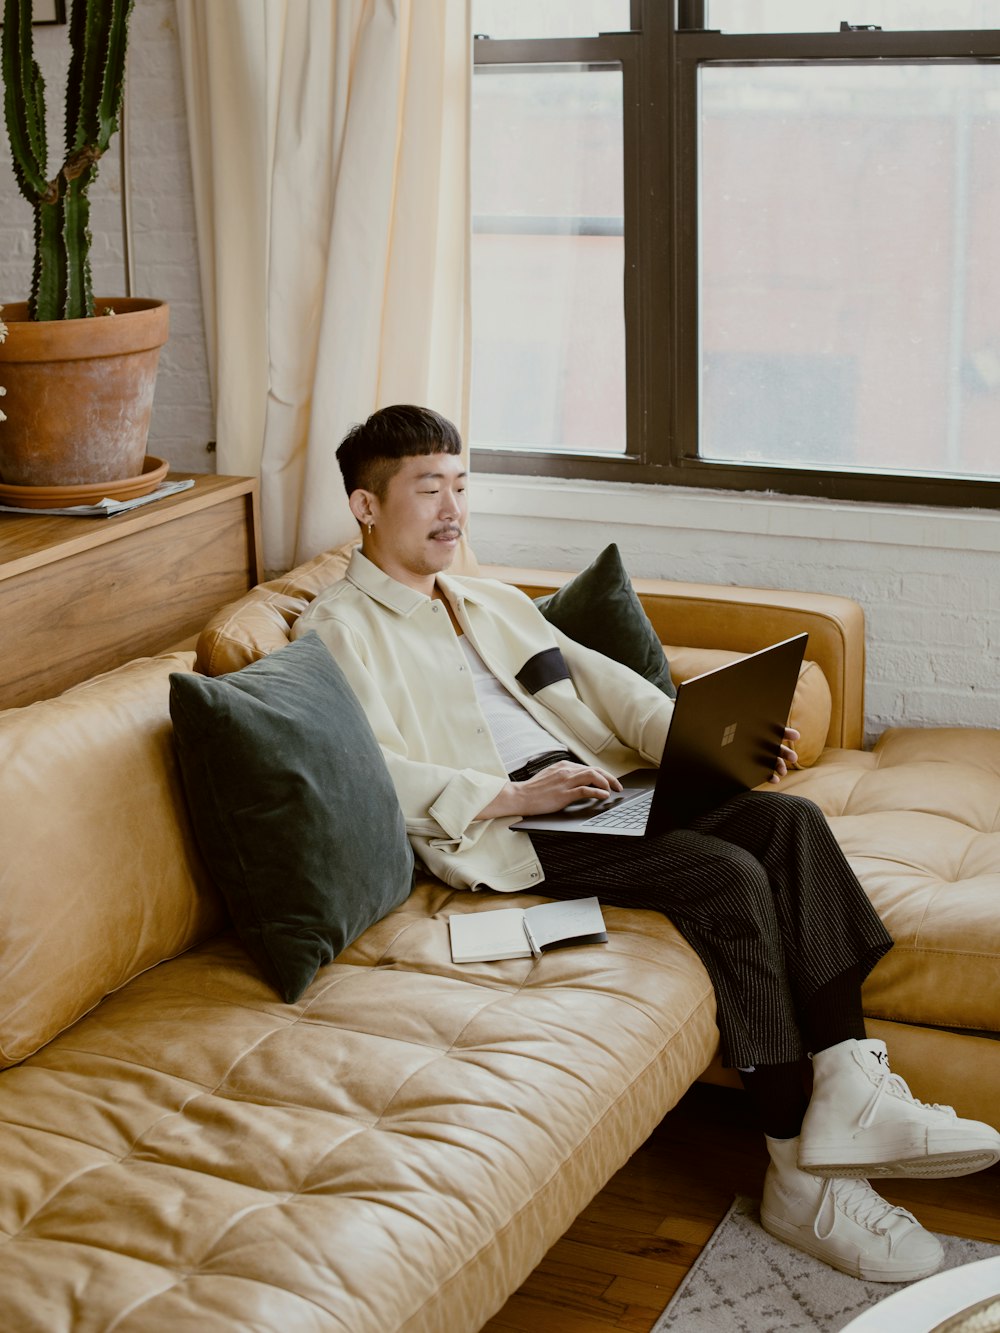 흰색 드레스 셔츠를 입은 남자가 검은색 Surface 노트북을 사용하여 흰색 소파에 앉아 있다